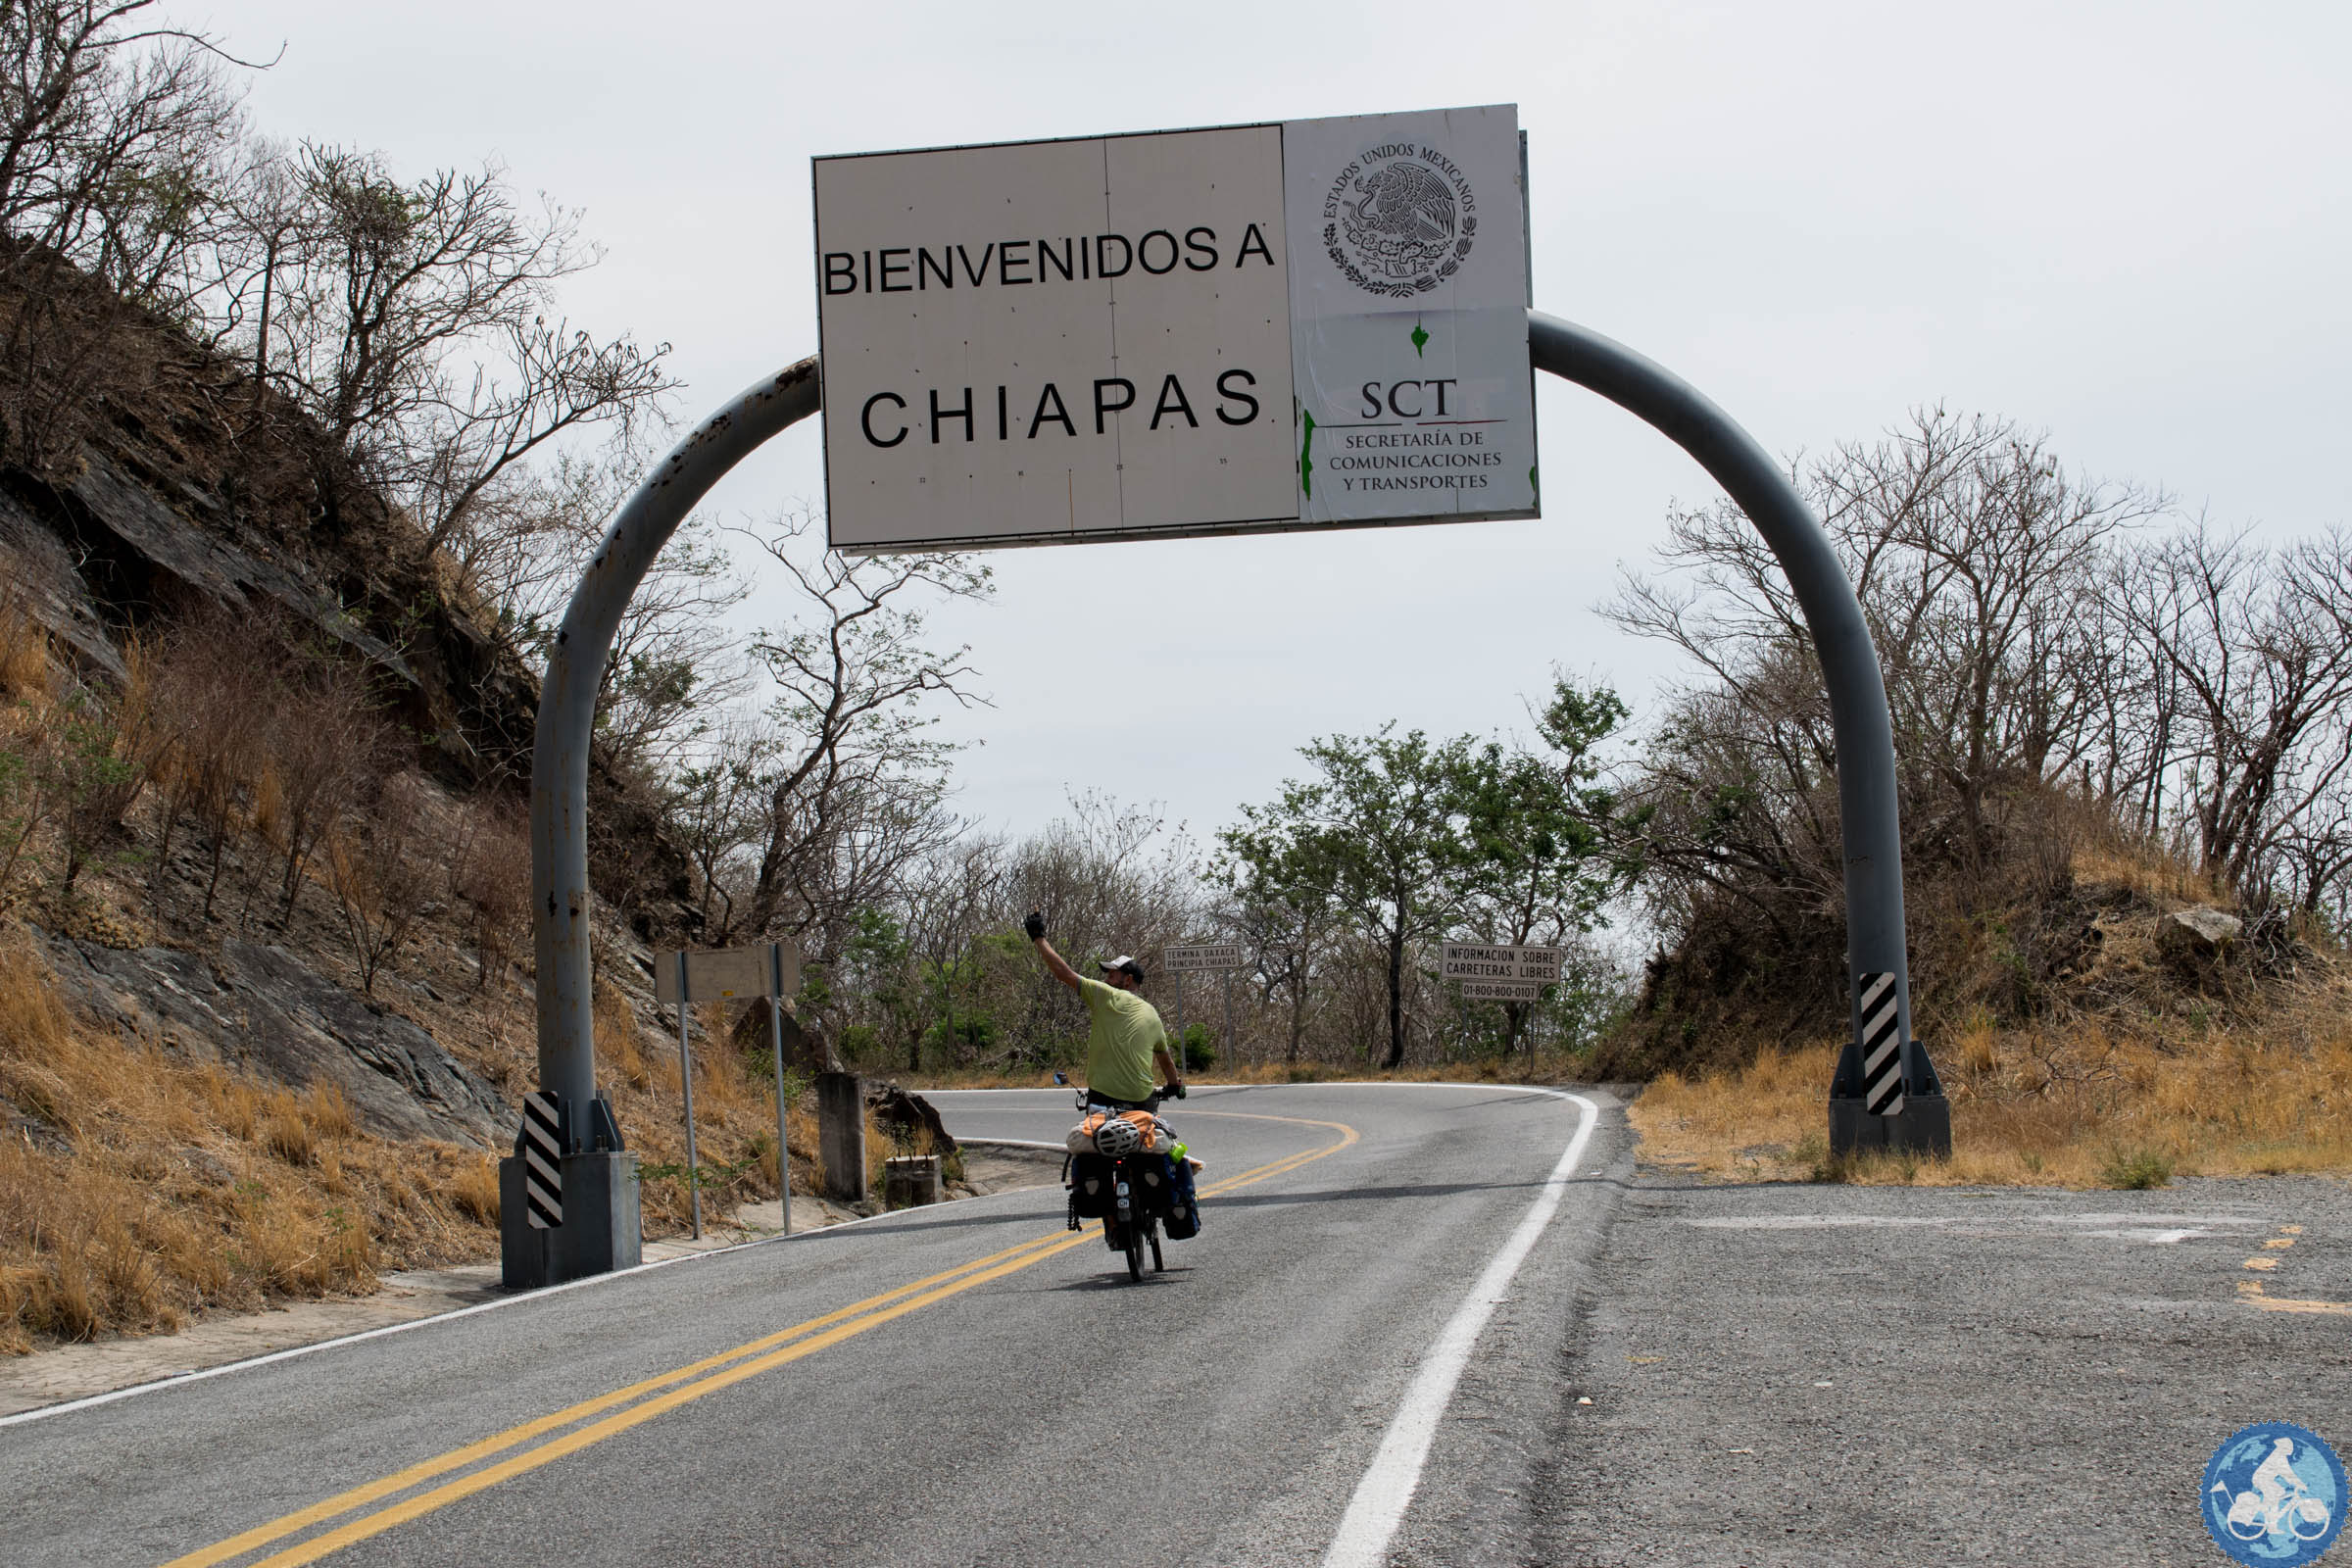 Chiapas finally!